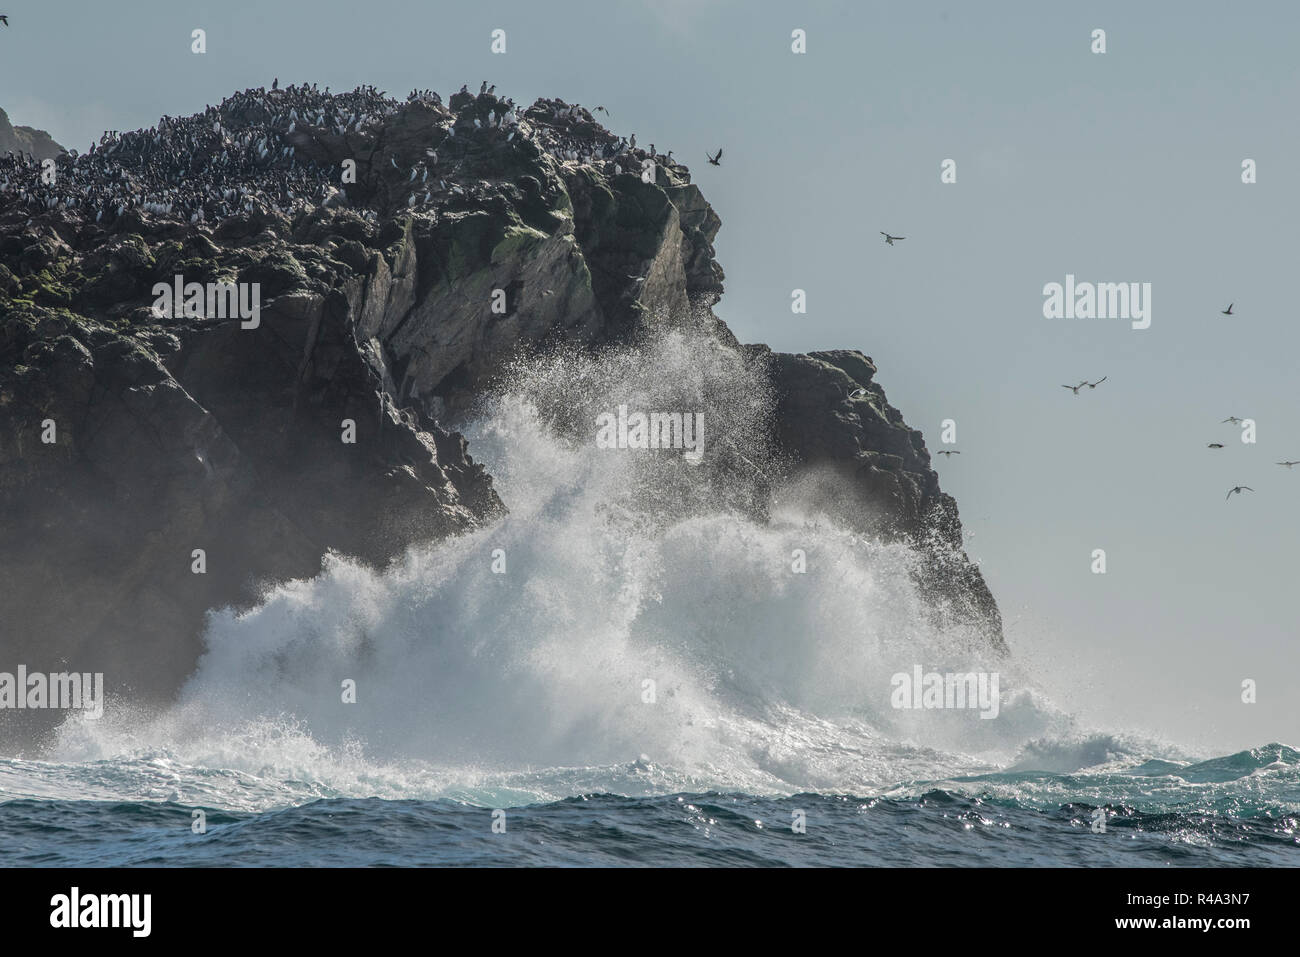 Las olas chocan contra la orilla de las Islas Farallón frente a la costa de California, las islas son un importante sitio de anidación de aves pelágicas. Foto de stock